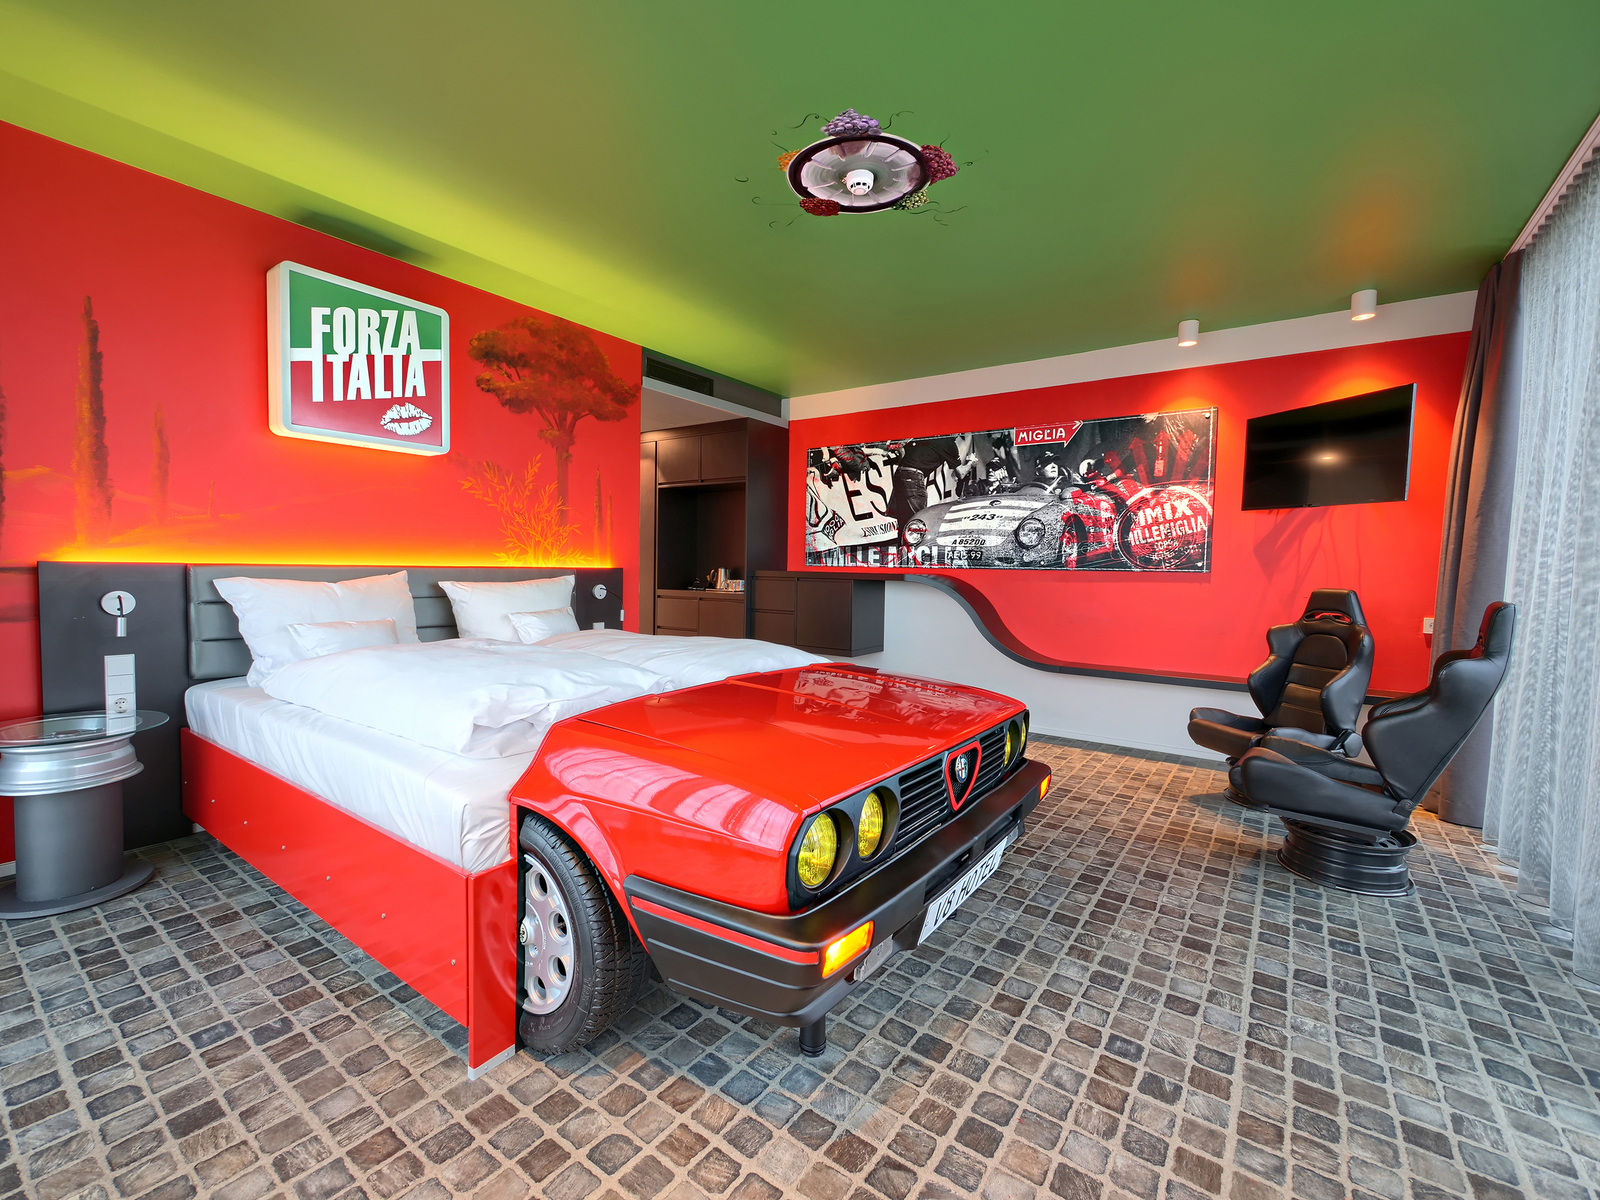 Italia-Themenzimmer im V8 Hotel mit roten Wänden und zwei schwarzen Autositz-Sesseln